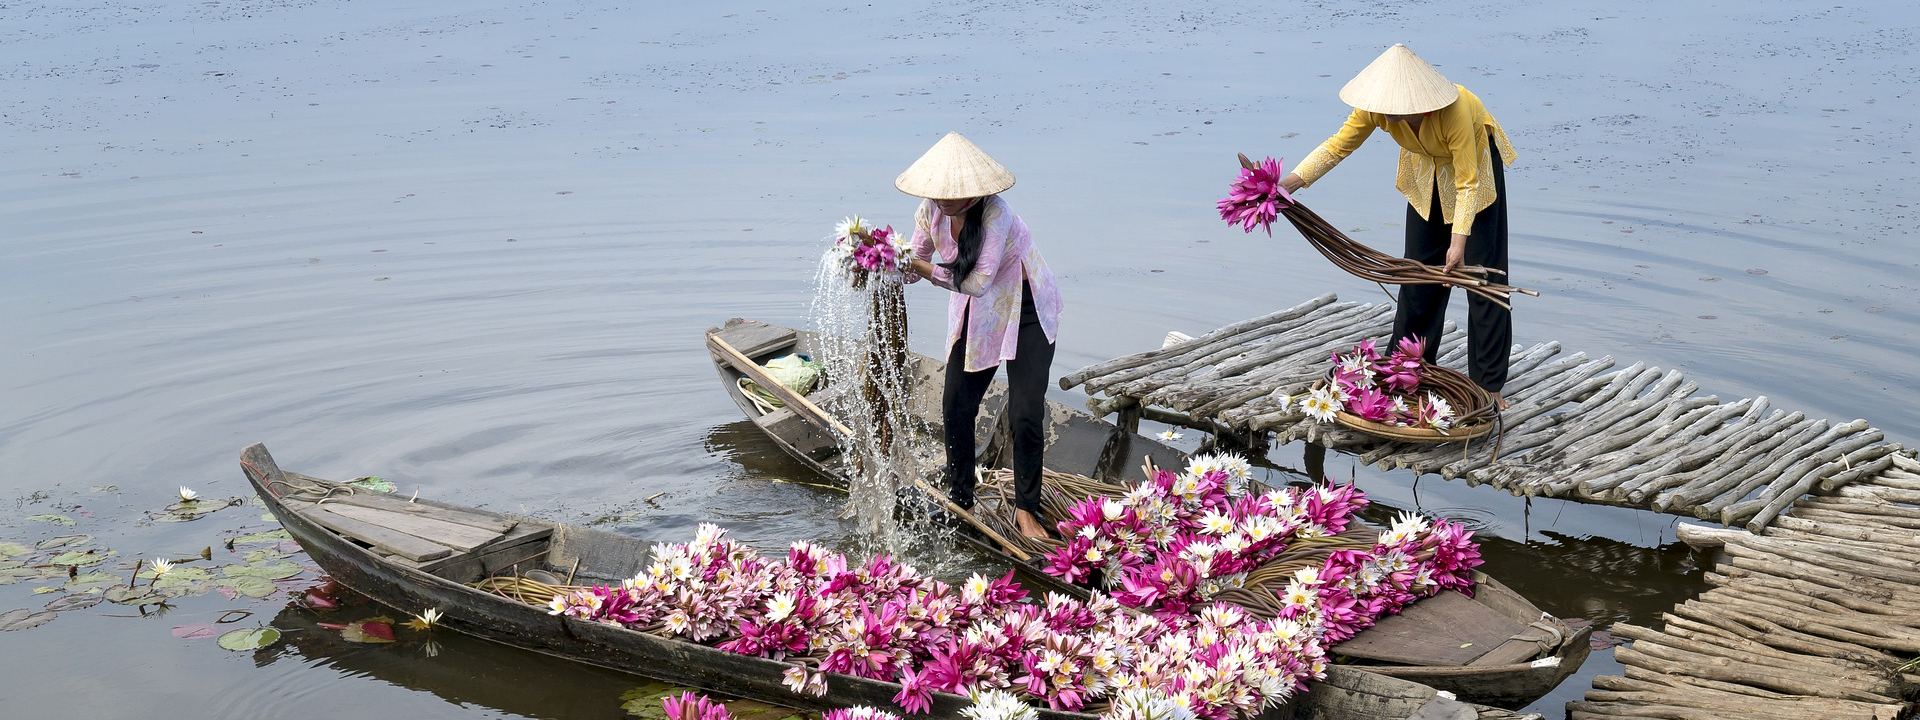 À la decouverte des couleurs culturelles du vietnam 15 jours